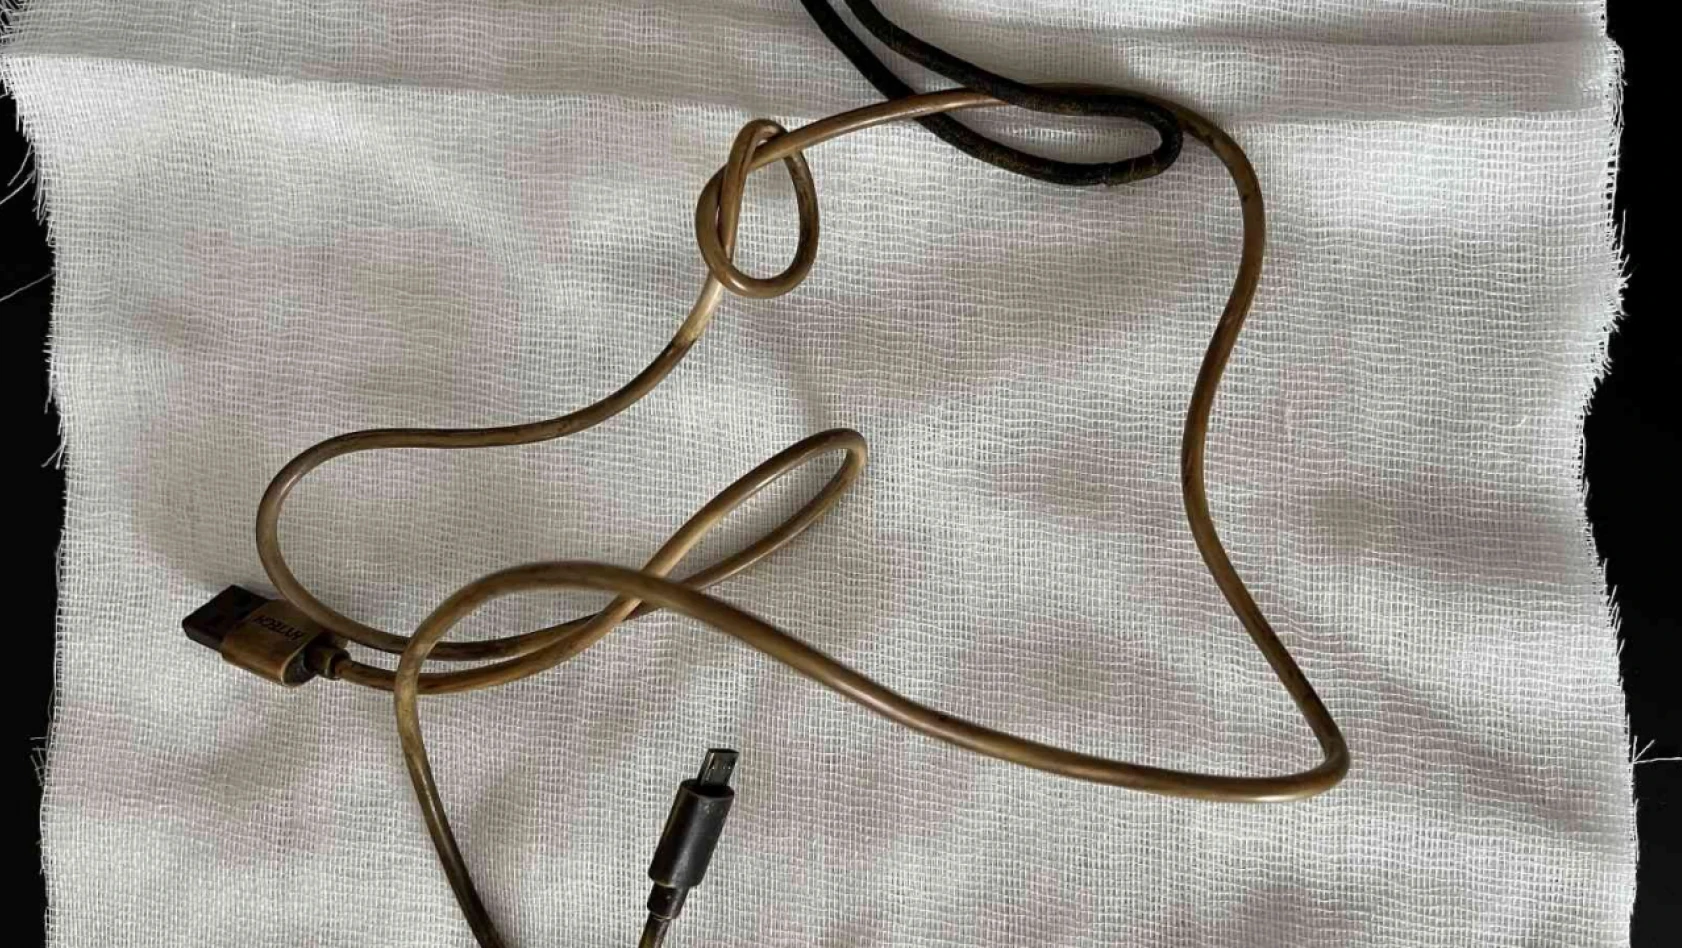 Kusma ve karın ağrısı şikayetiyle doktora giden çocuğun karnından telefon şarj kablosu çıktı